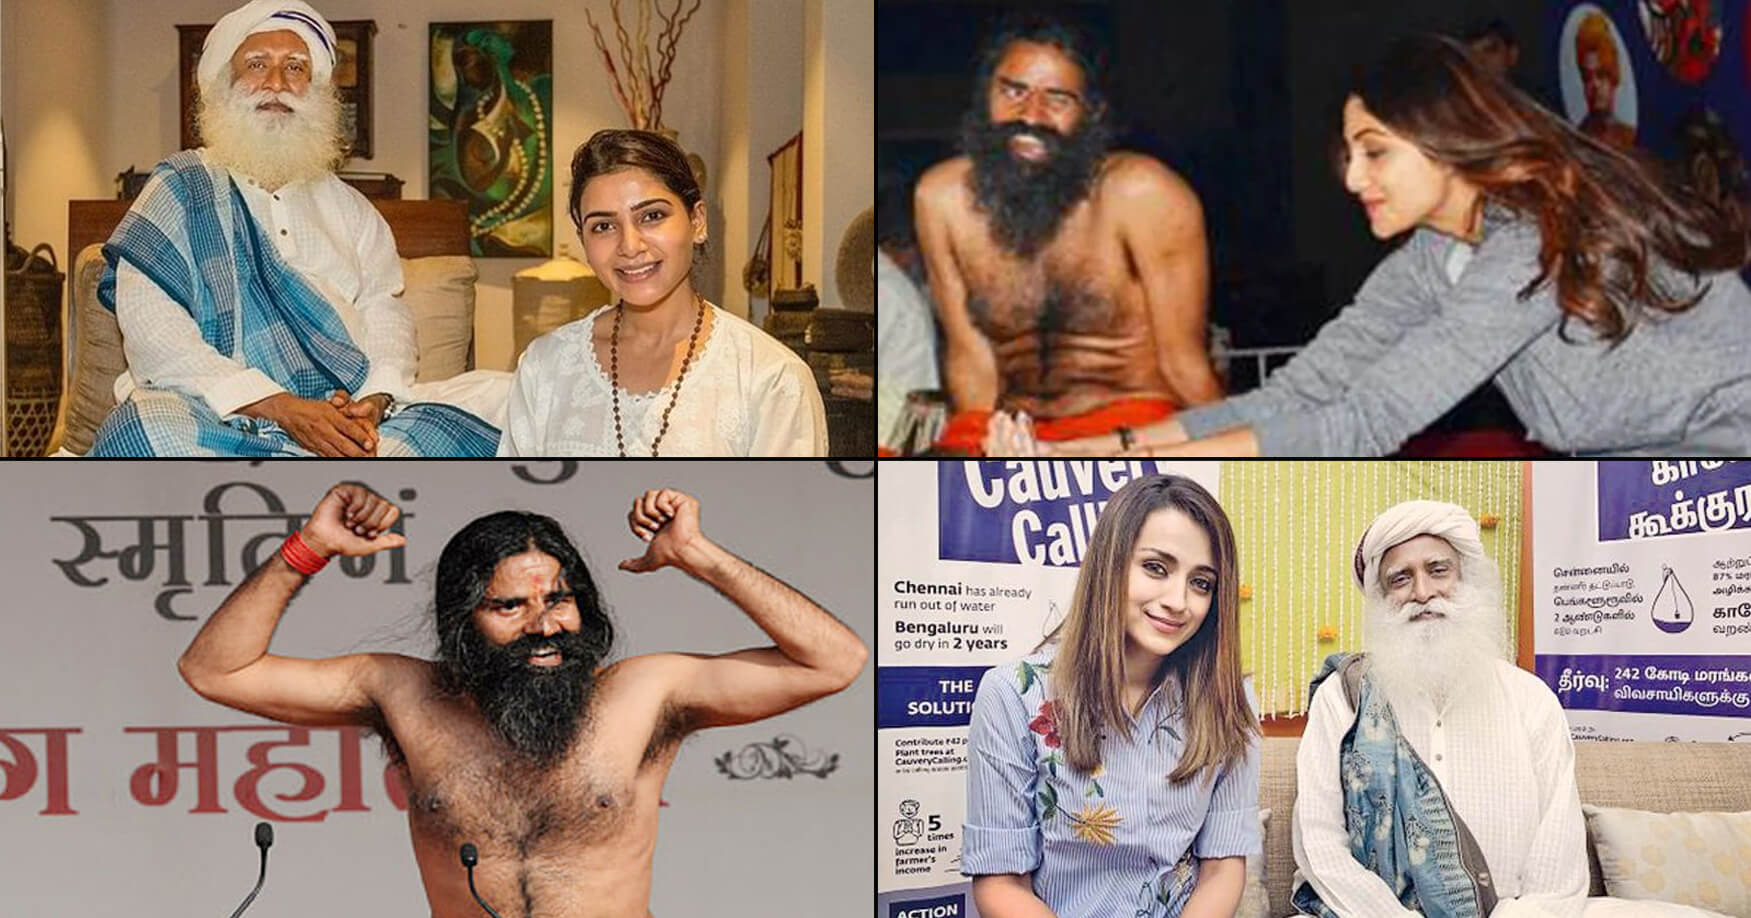 પ્રવચન આપનાર ભારતના આ 6 બાબાઓ પાસે છે કરોડો-અરબોની સંપત્તિ, સાંભળી તમે પણ રહી જશો હેરાન